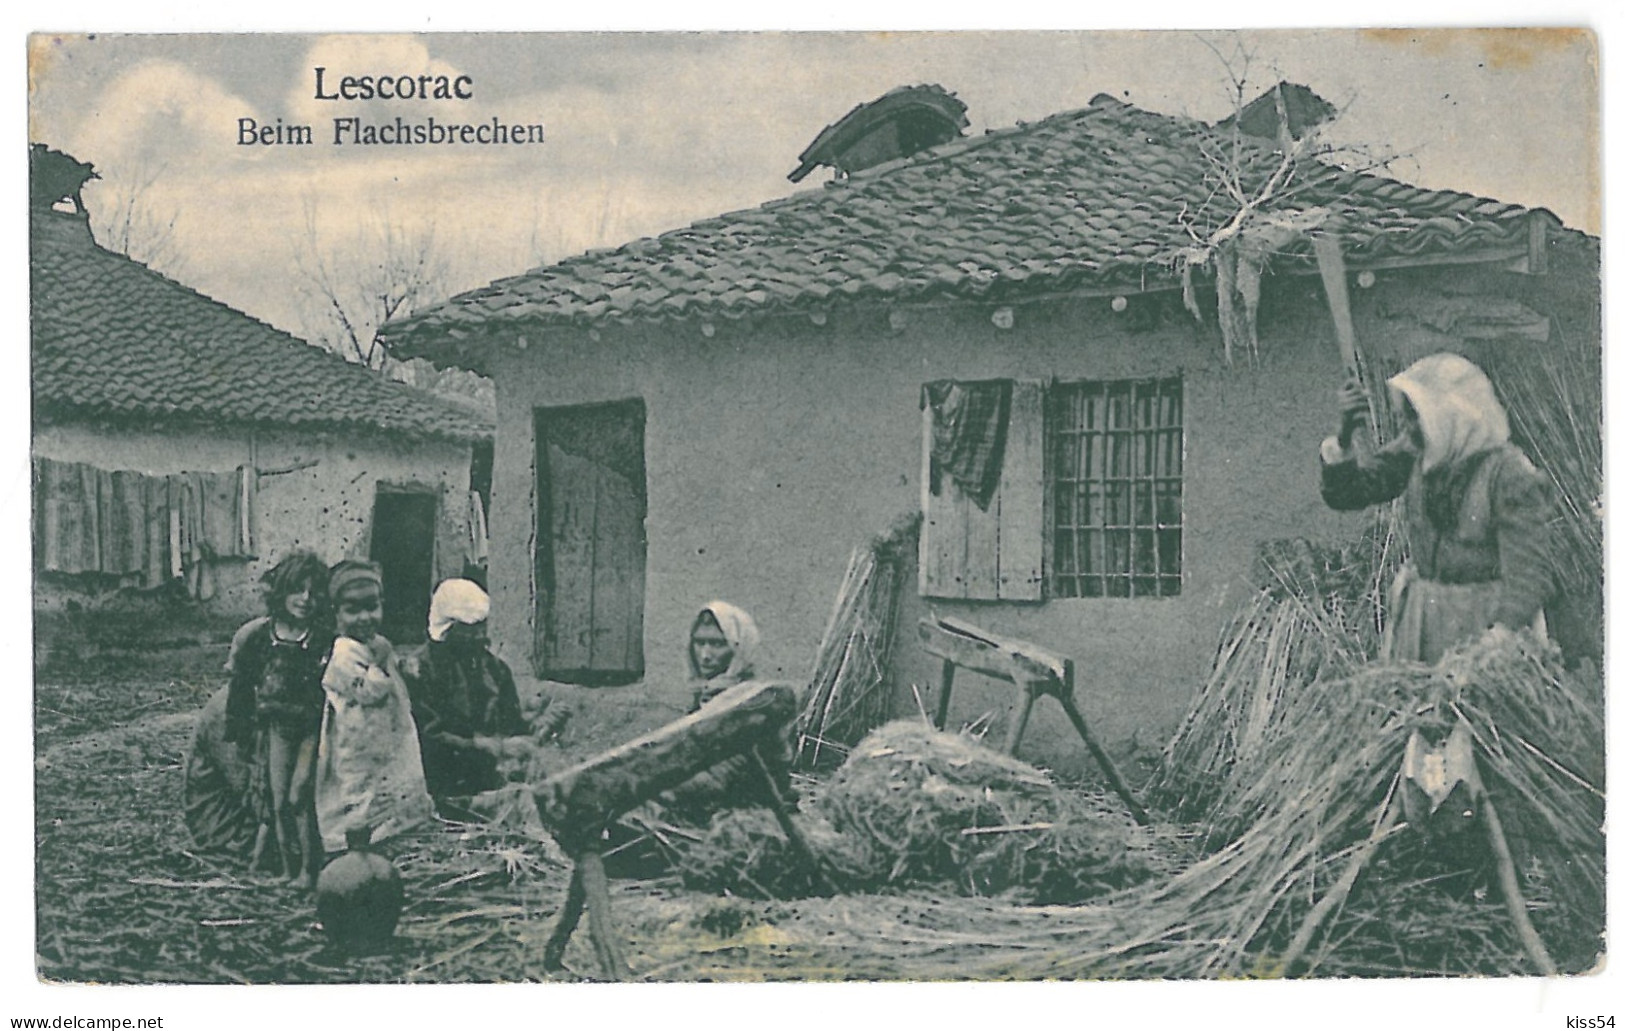 UK 60 - 15332 LESCORAC, ETHNICS, Ukraine - Old Postcard - Unused - Ukraine